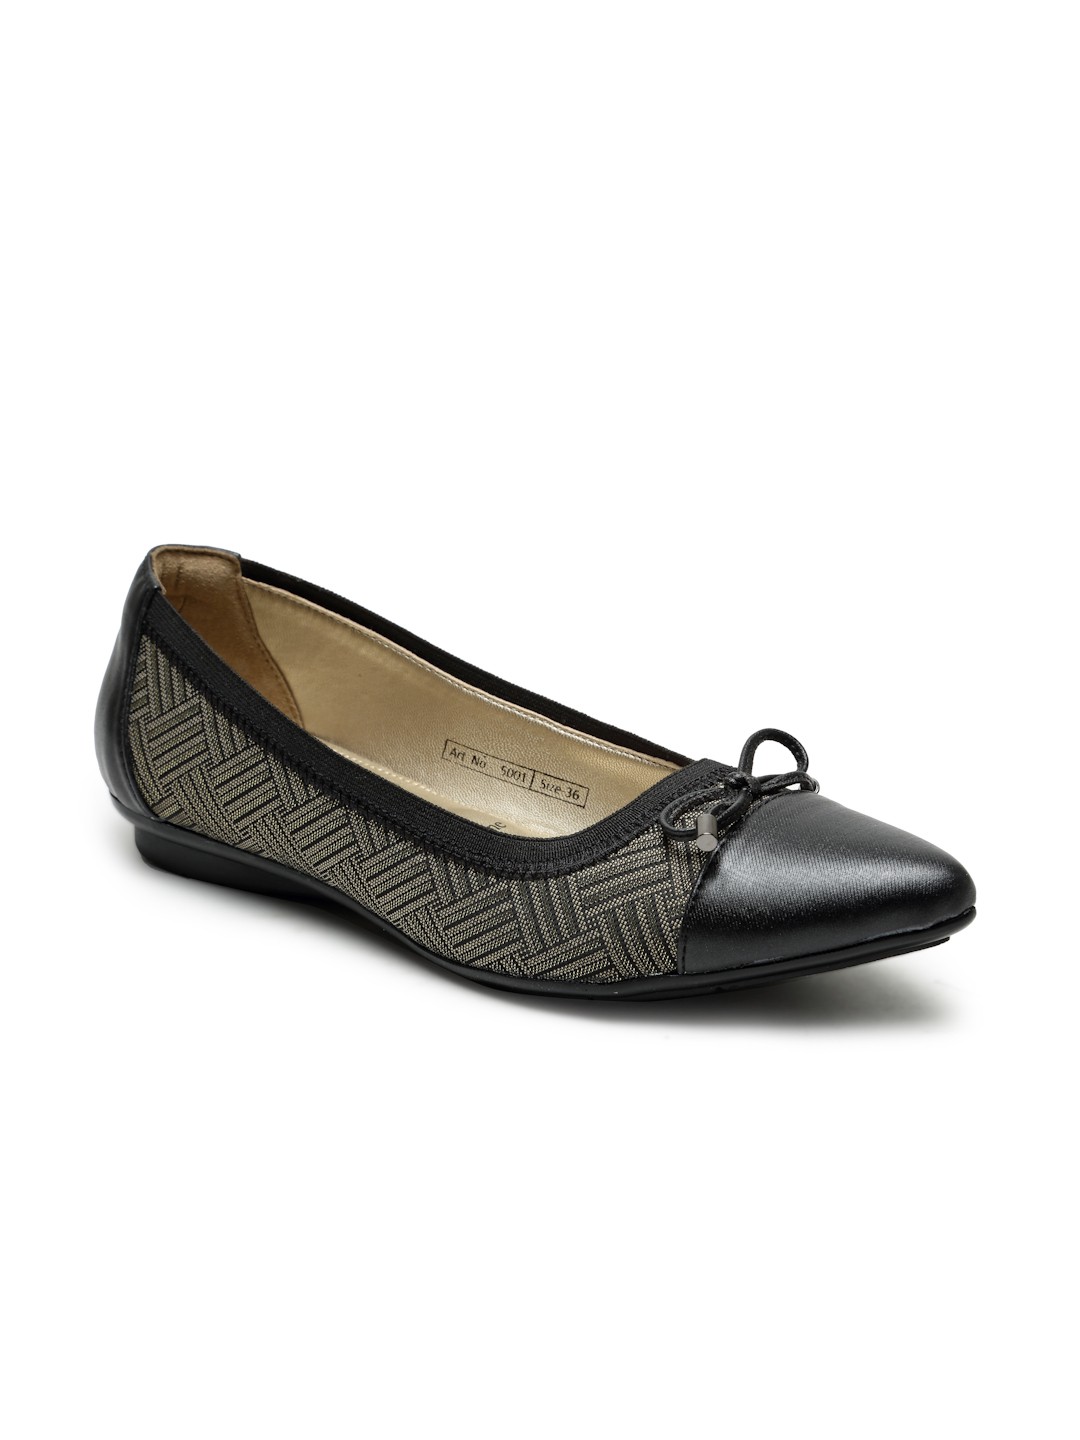 Buy Von Wellx Germany Comfort Women's Black Casual Shoes Lisa Online in Sohar